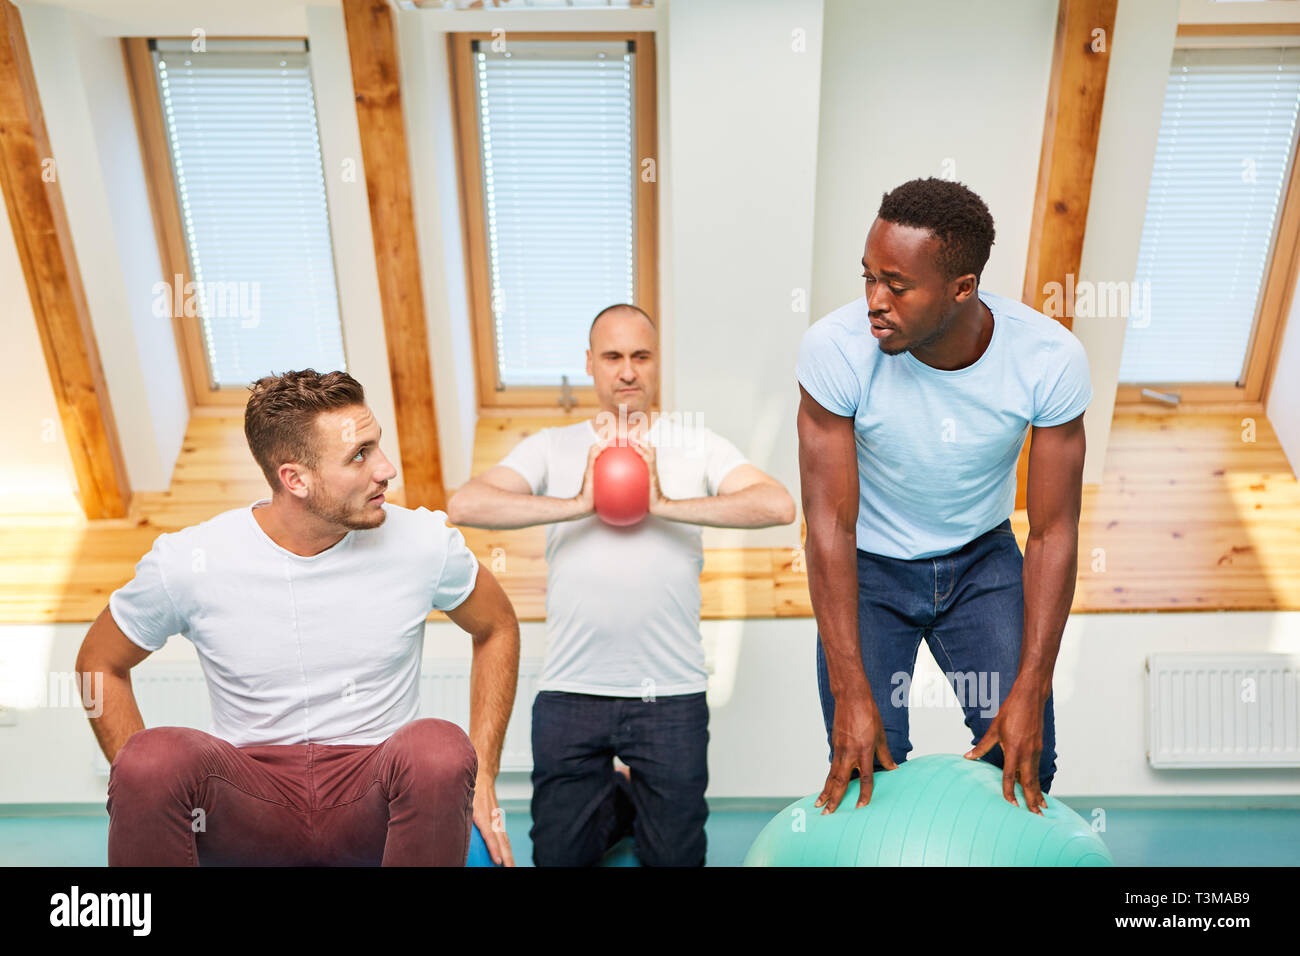 Gruppe der jungen Männer ist das Training mit Pilates gym ball in einer Klasse in der Turnhalle Stockfoto